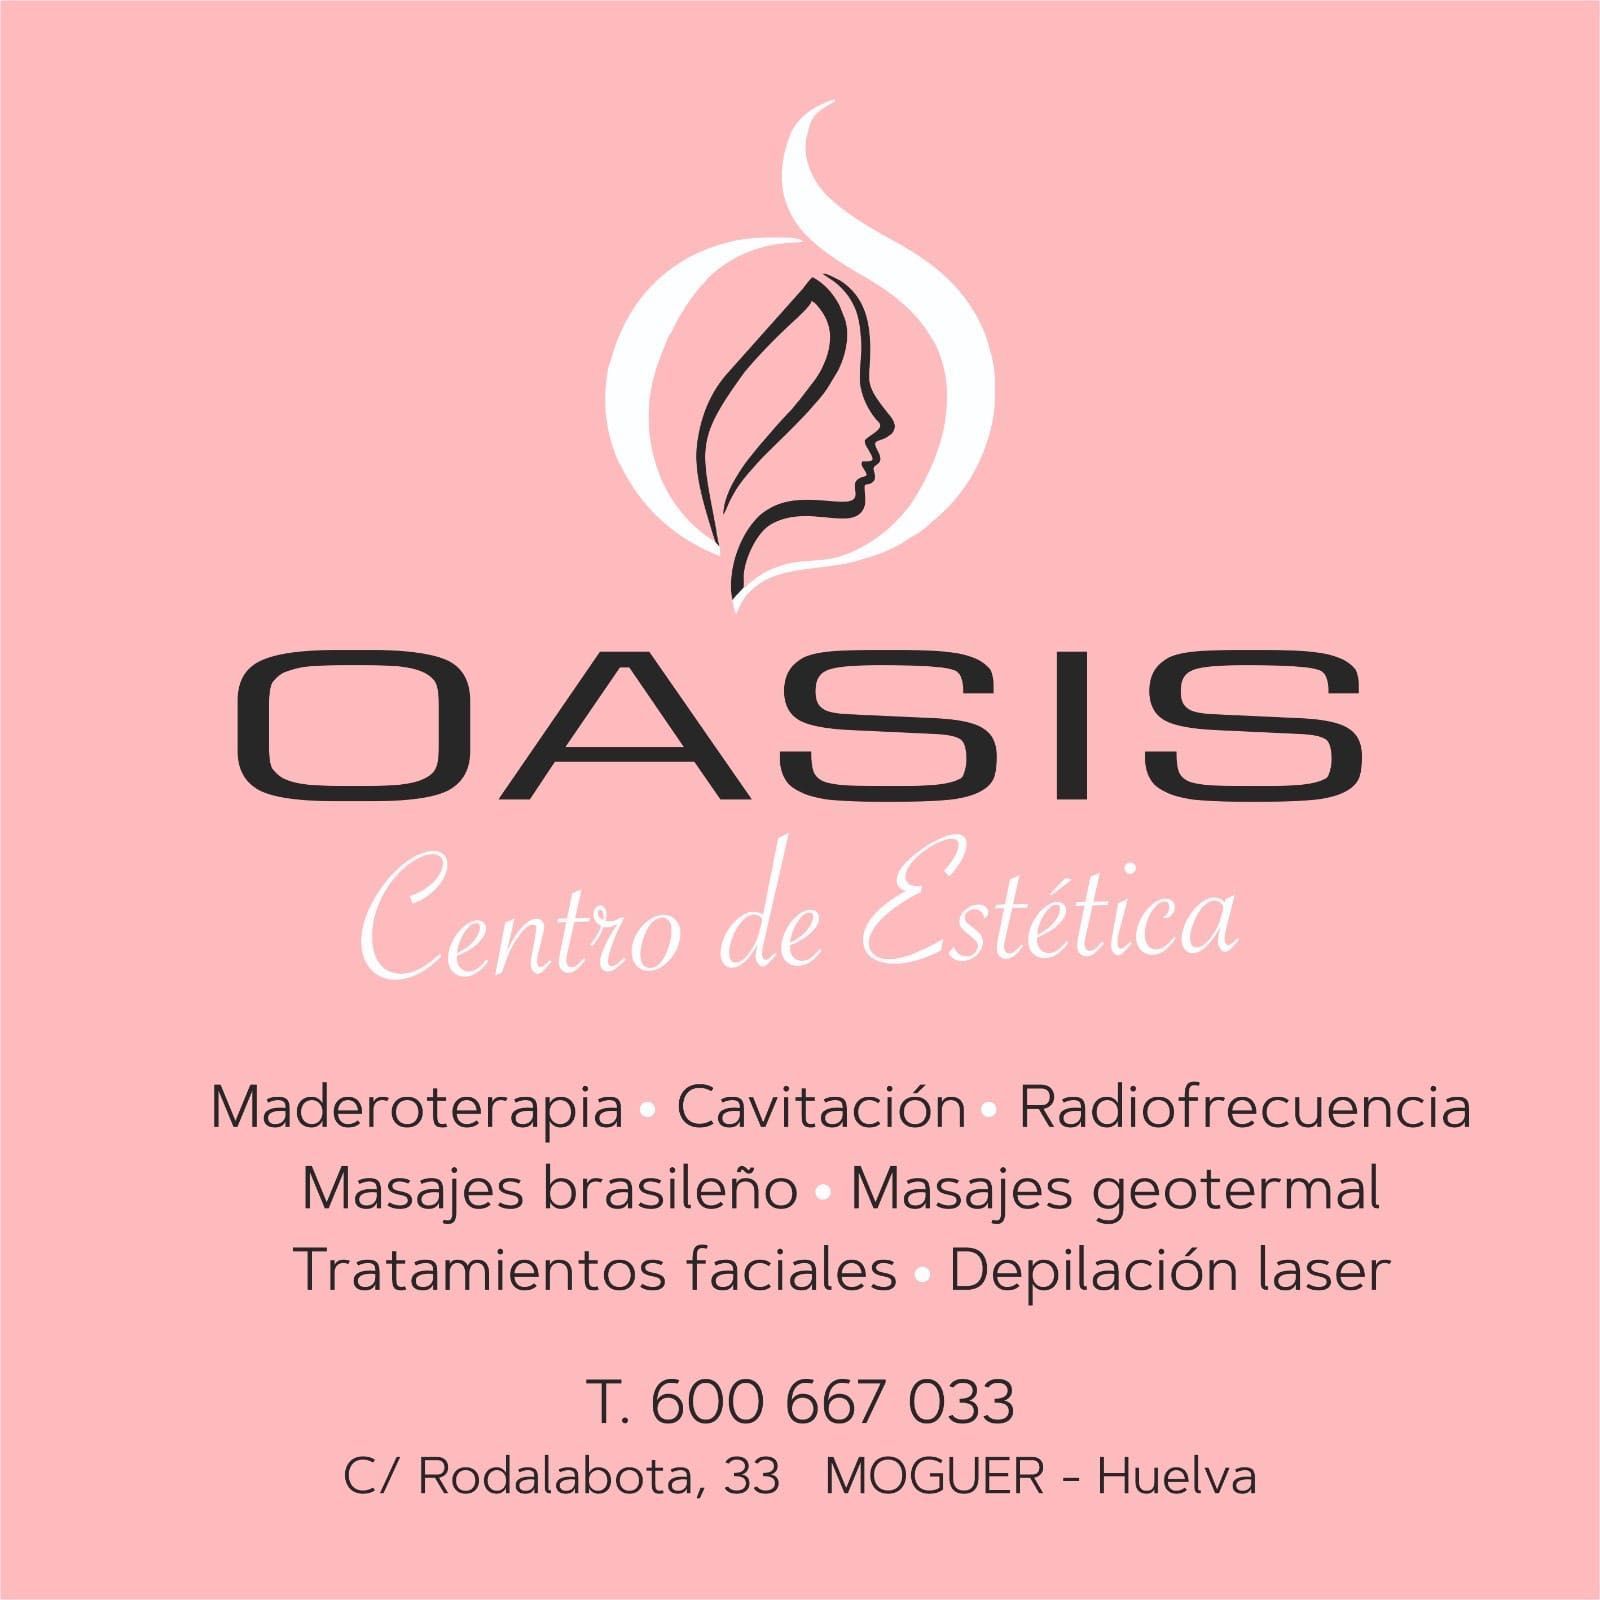 Centro estética oasis, Calle Rodalabota, 33, 21800, Moguer